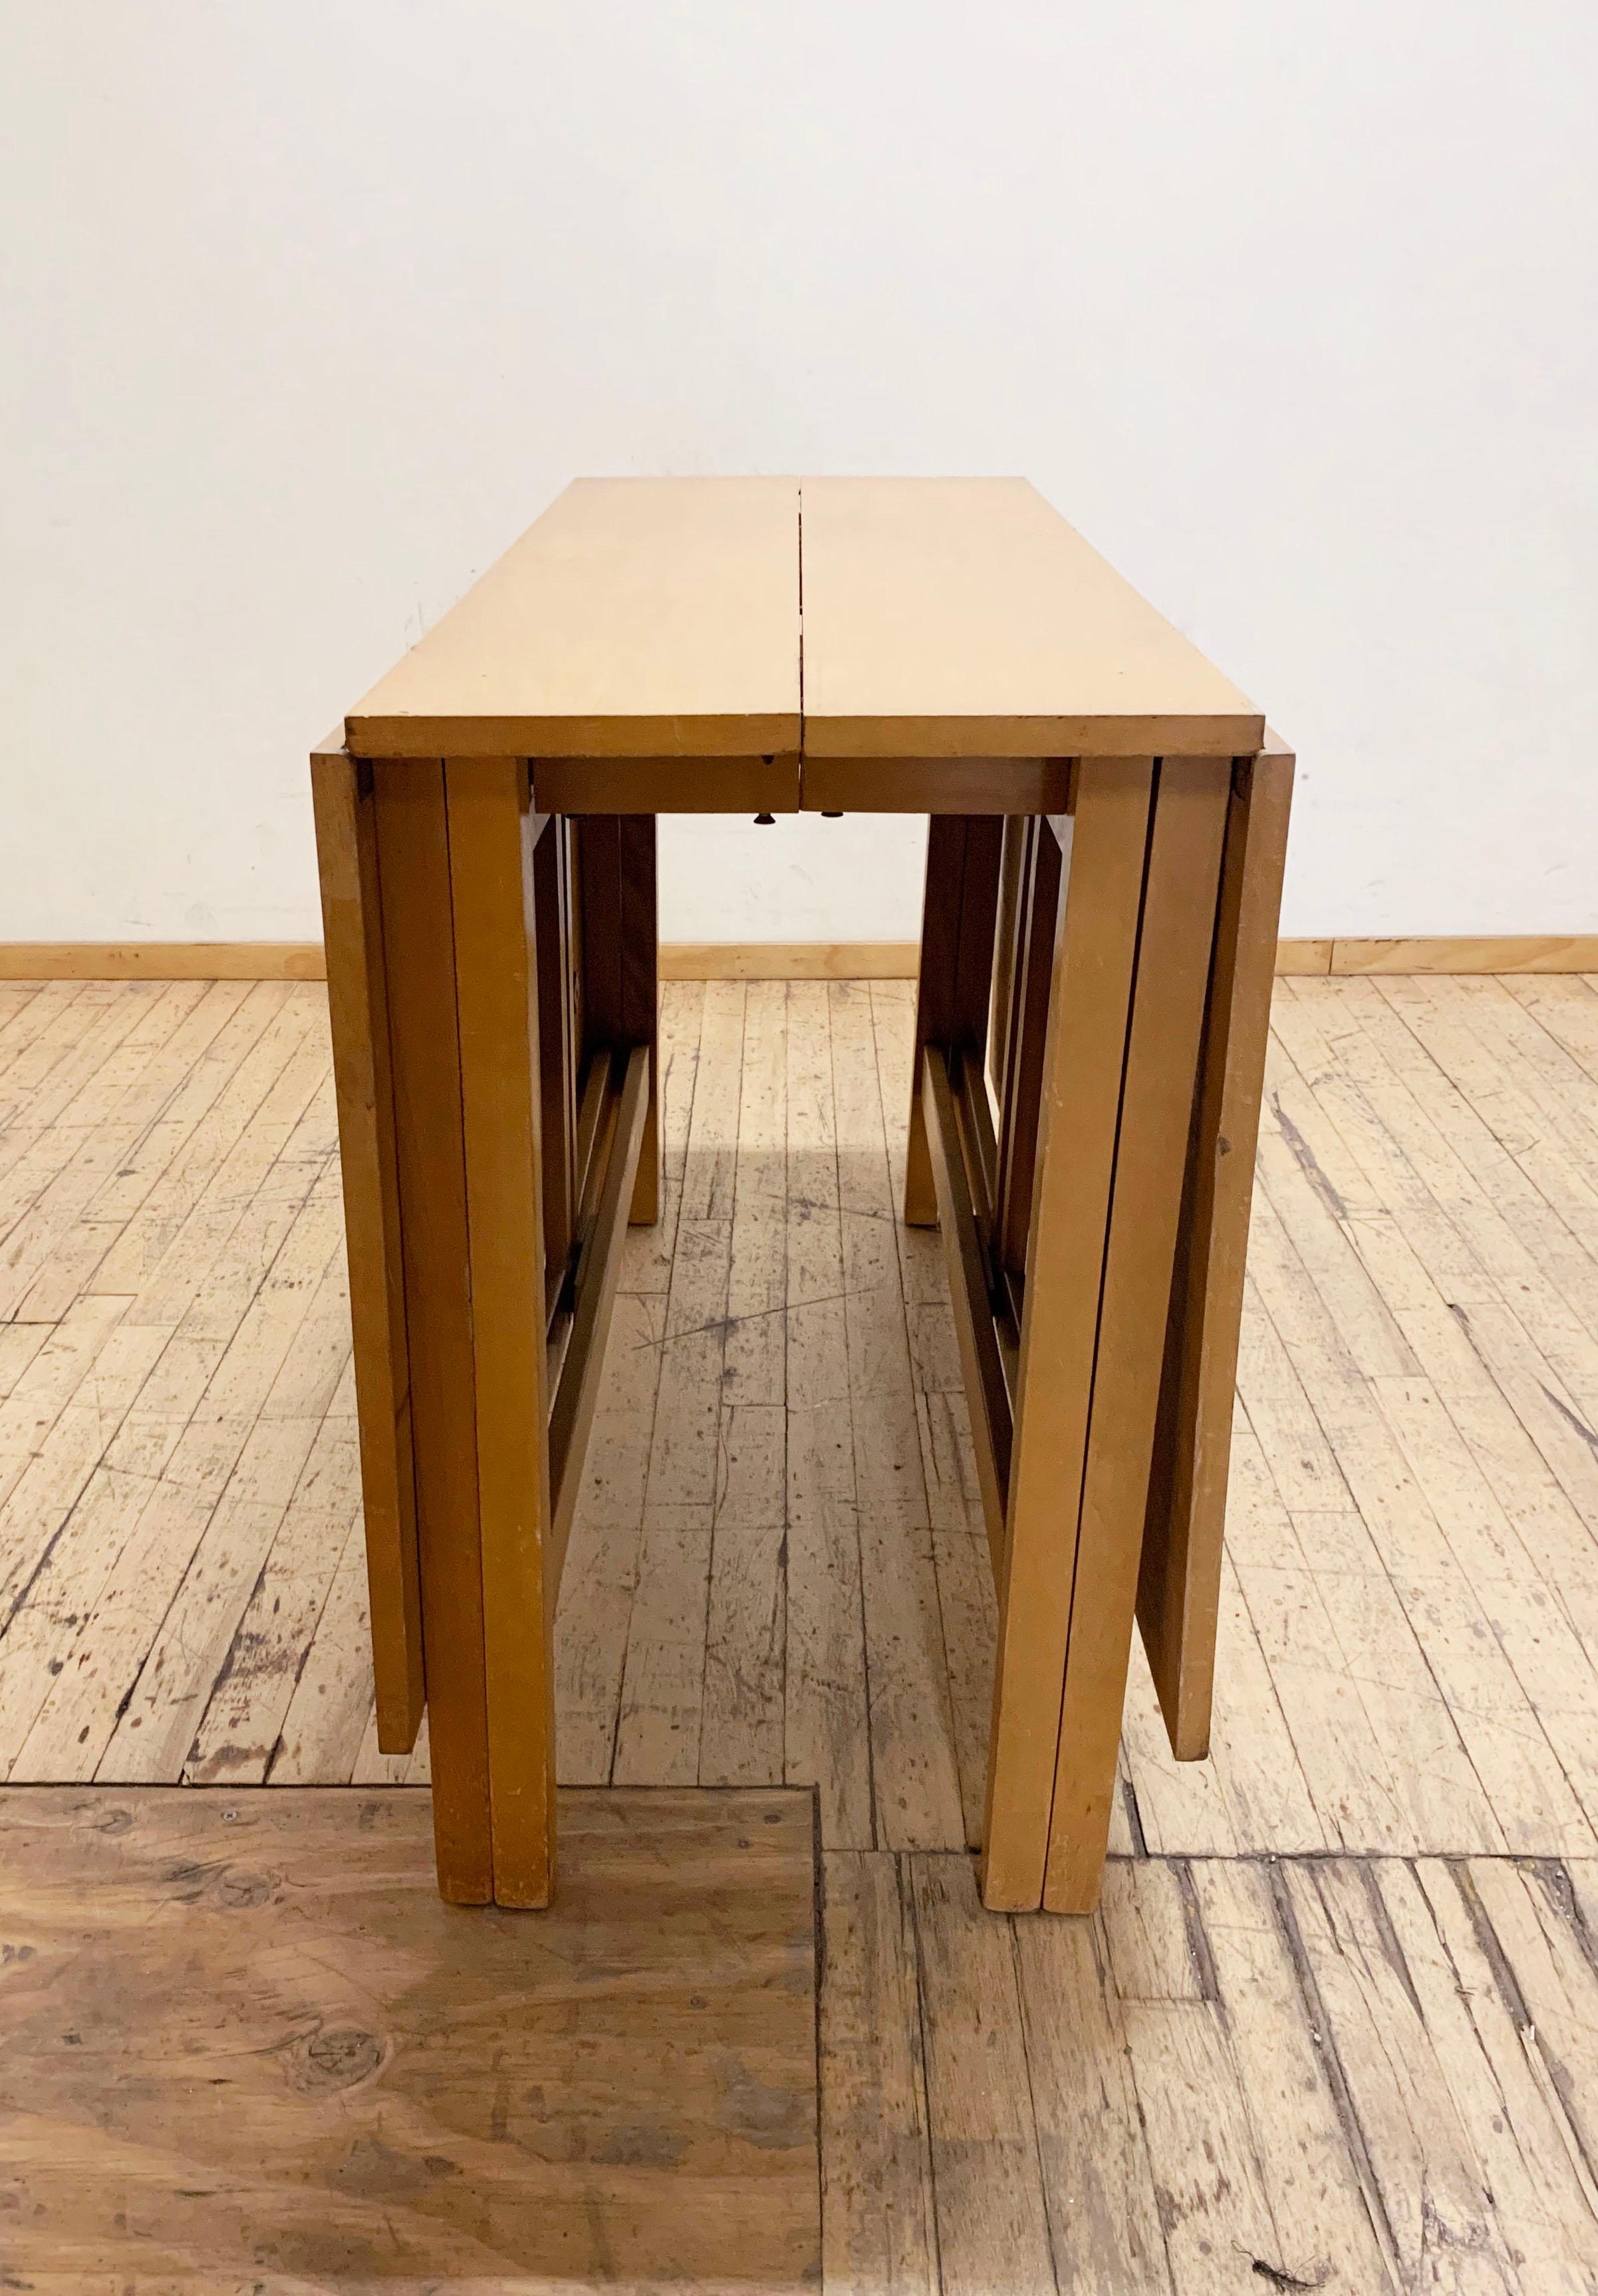 Vintage Gate Leg Dining Table attribuée à Bruno Mathsson.
C'est un bel exemple de ce type de conception. Une différence notable par rapport au modèle Mathsson est la simplicité des pieds. Il n'y a pas de rounds. 
notez également la bordure finement